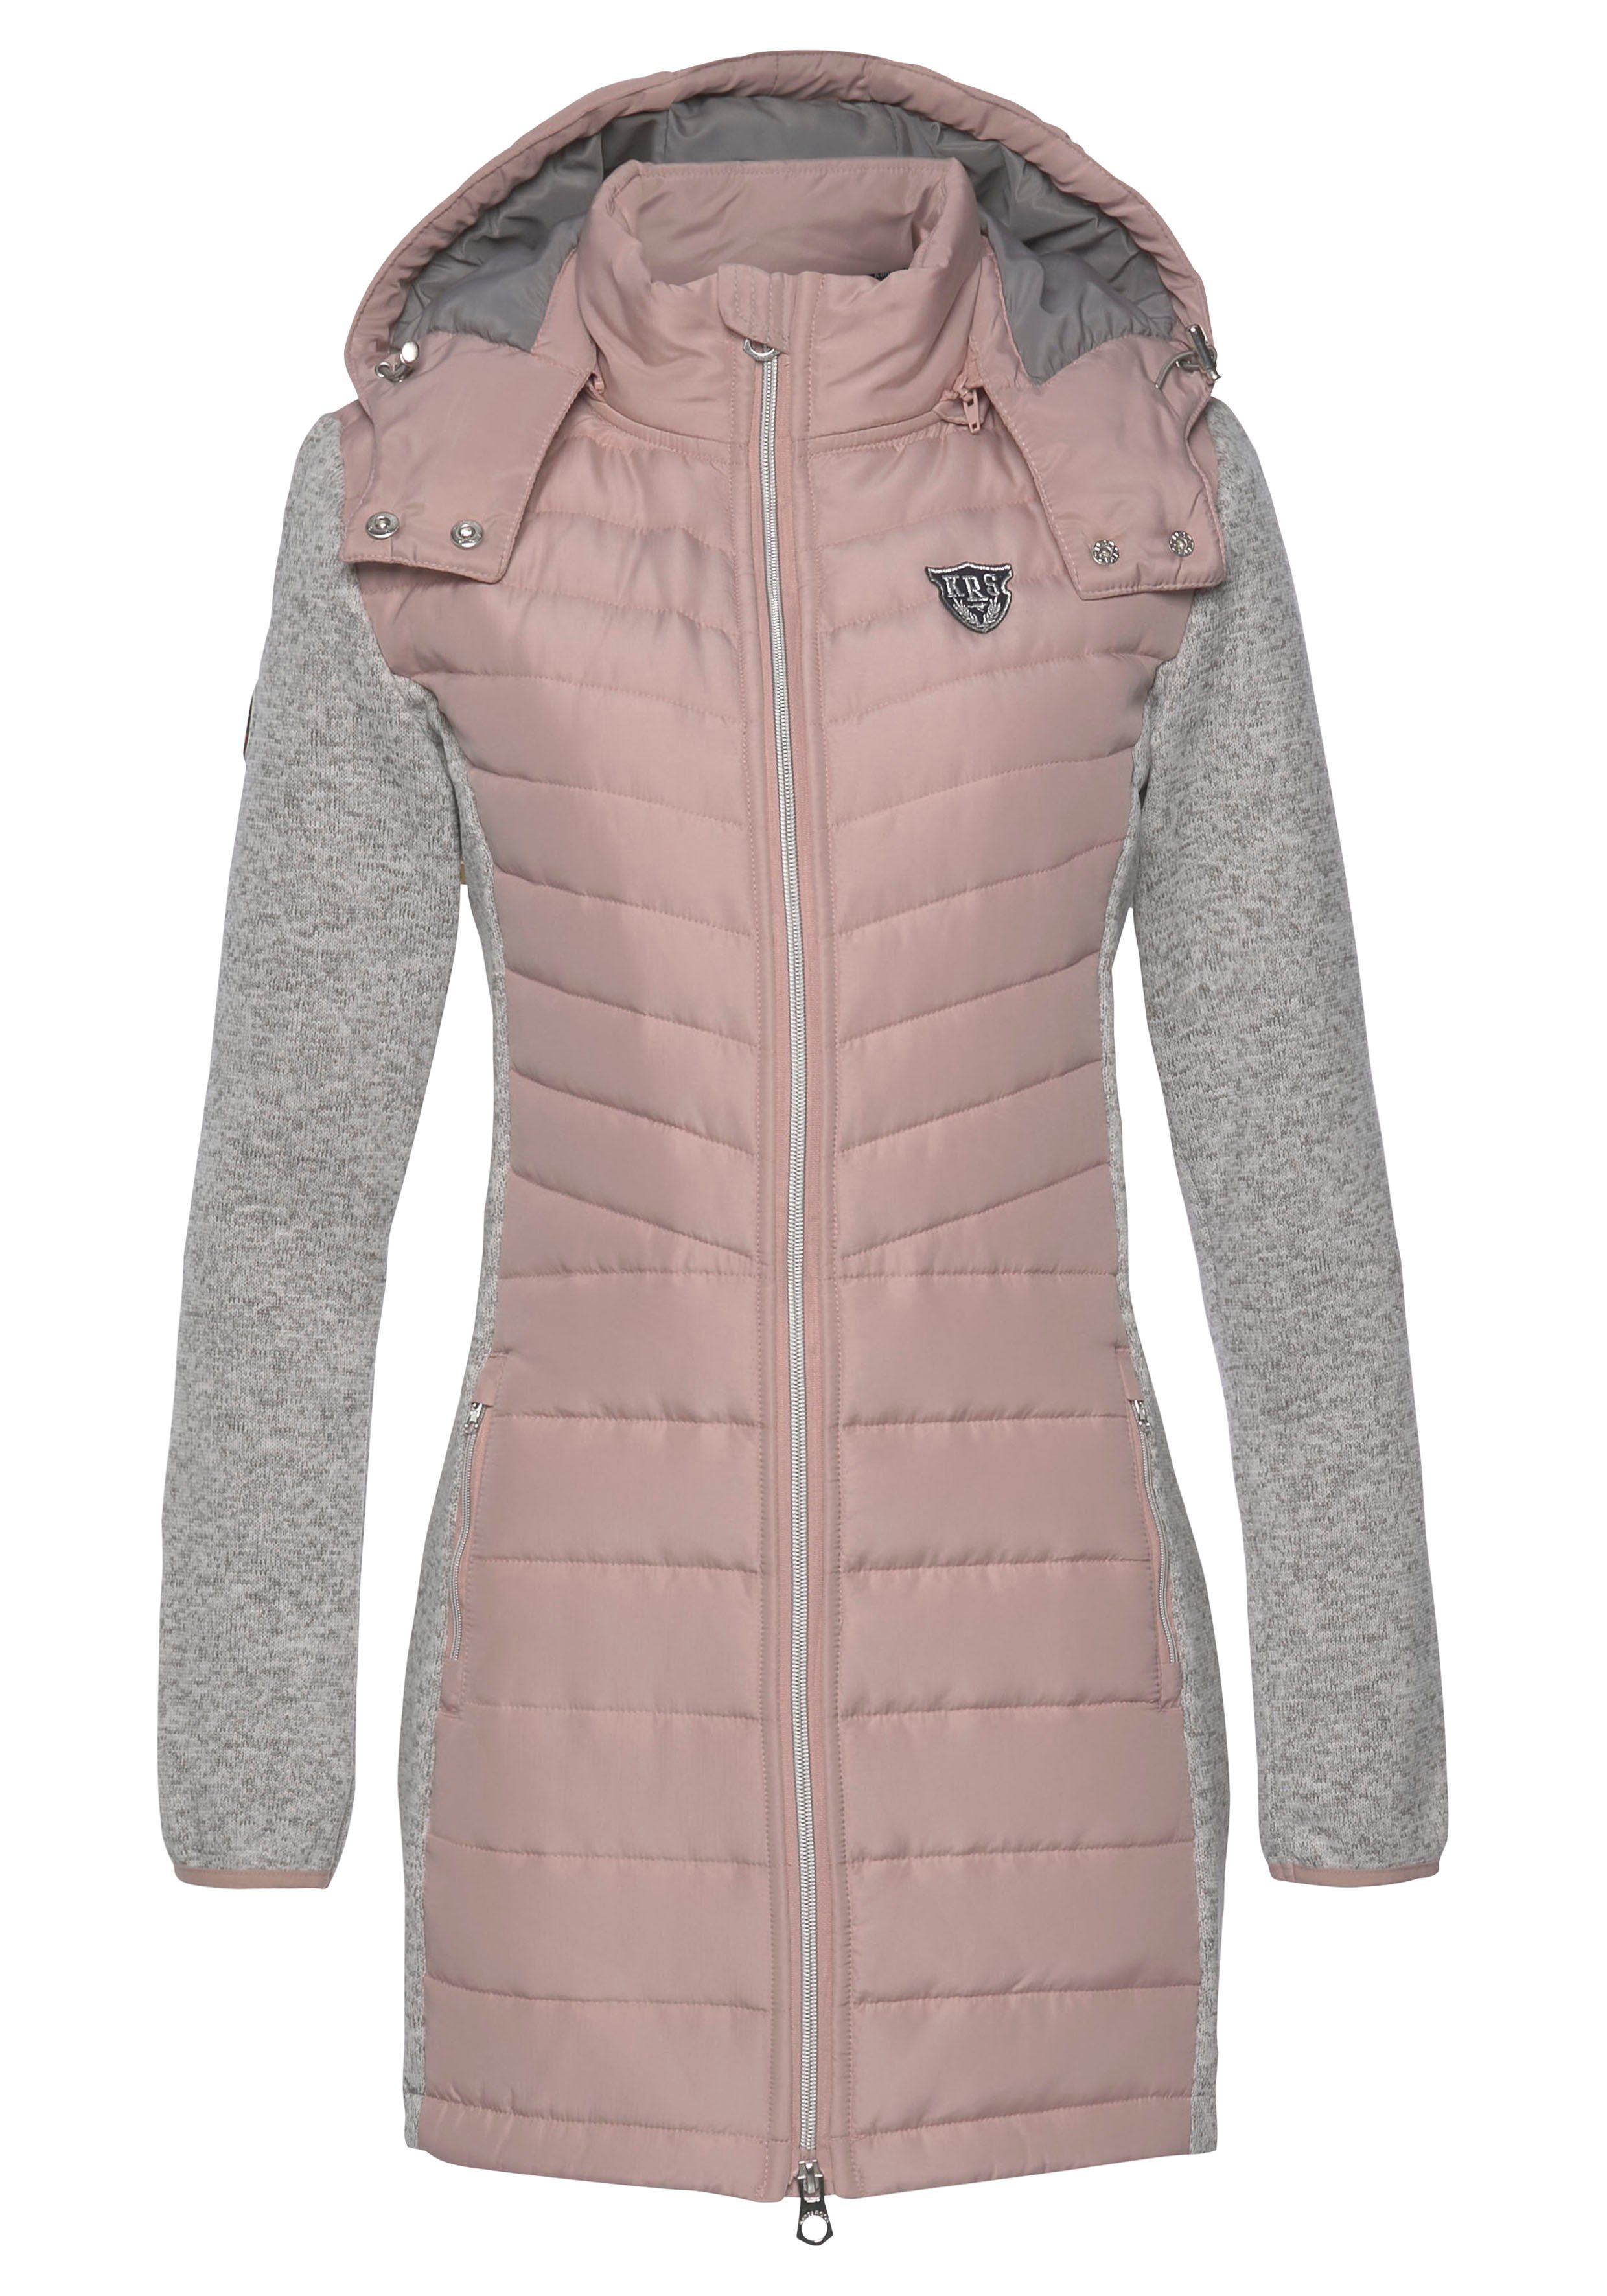 KangaROOS Langjacke aus 2-In-1 im Look grau-rosa nachhaltigem Material) (Jacke trendigen